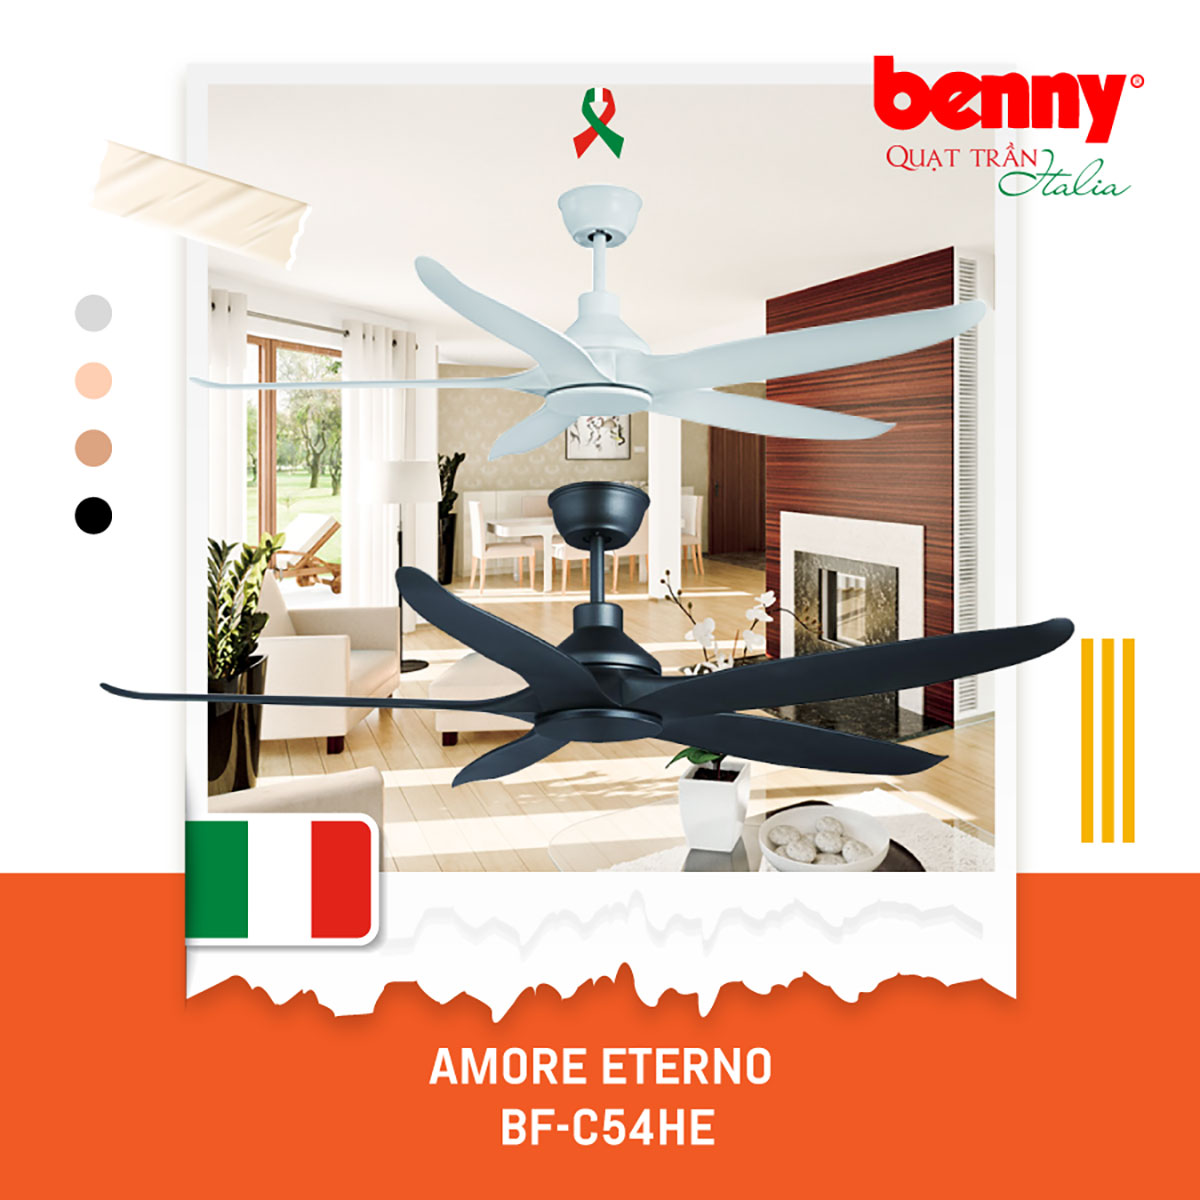 Quạt trần Amore Enterno Benny BF-C54HE, 5 cánh đem lại vẻ đẹp sang trọng, tinh tế và hiện đại cho không gian ngôi nhà của bạn có điều khiển thông minh từ xa tiện dụng